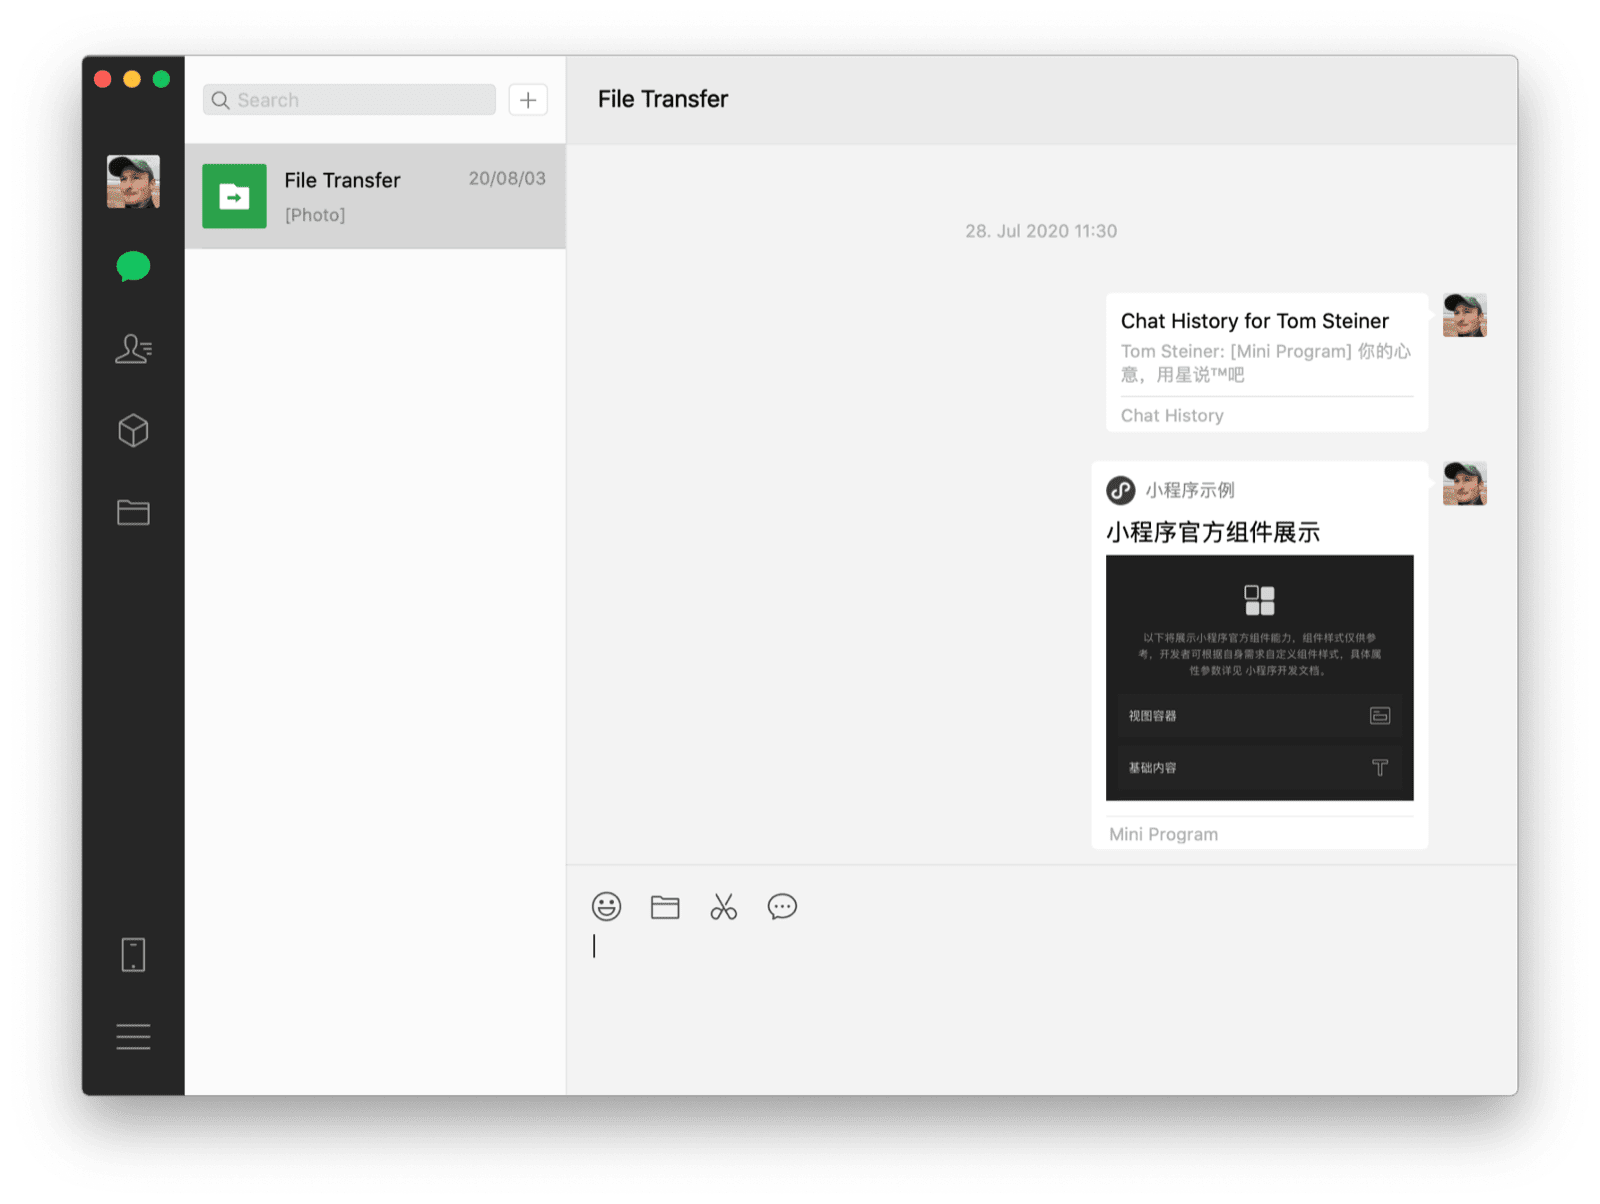 微信 macOS 桌面客户端显示了一个与自己的聊天和一个分享的迷你应用，显示了两条聊天记录。